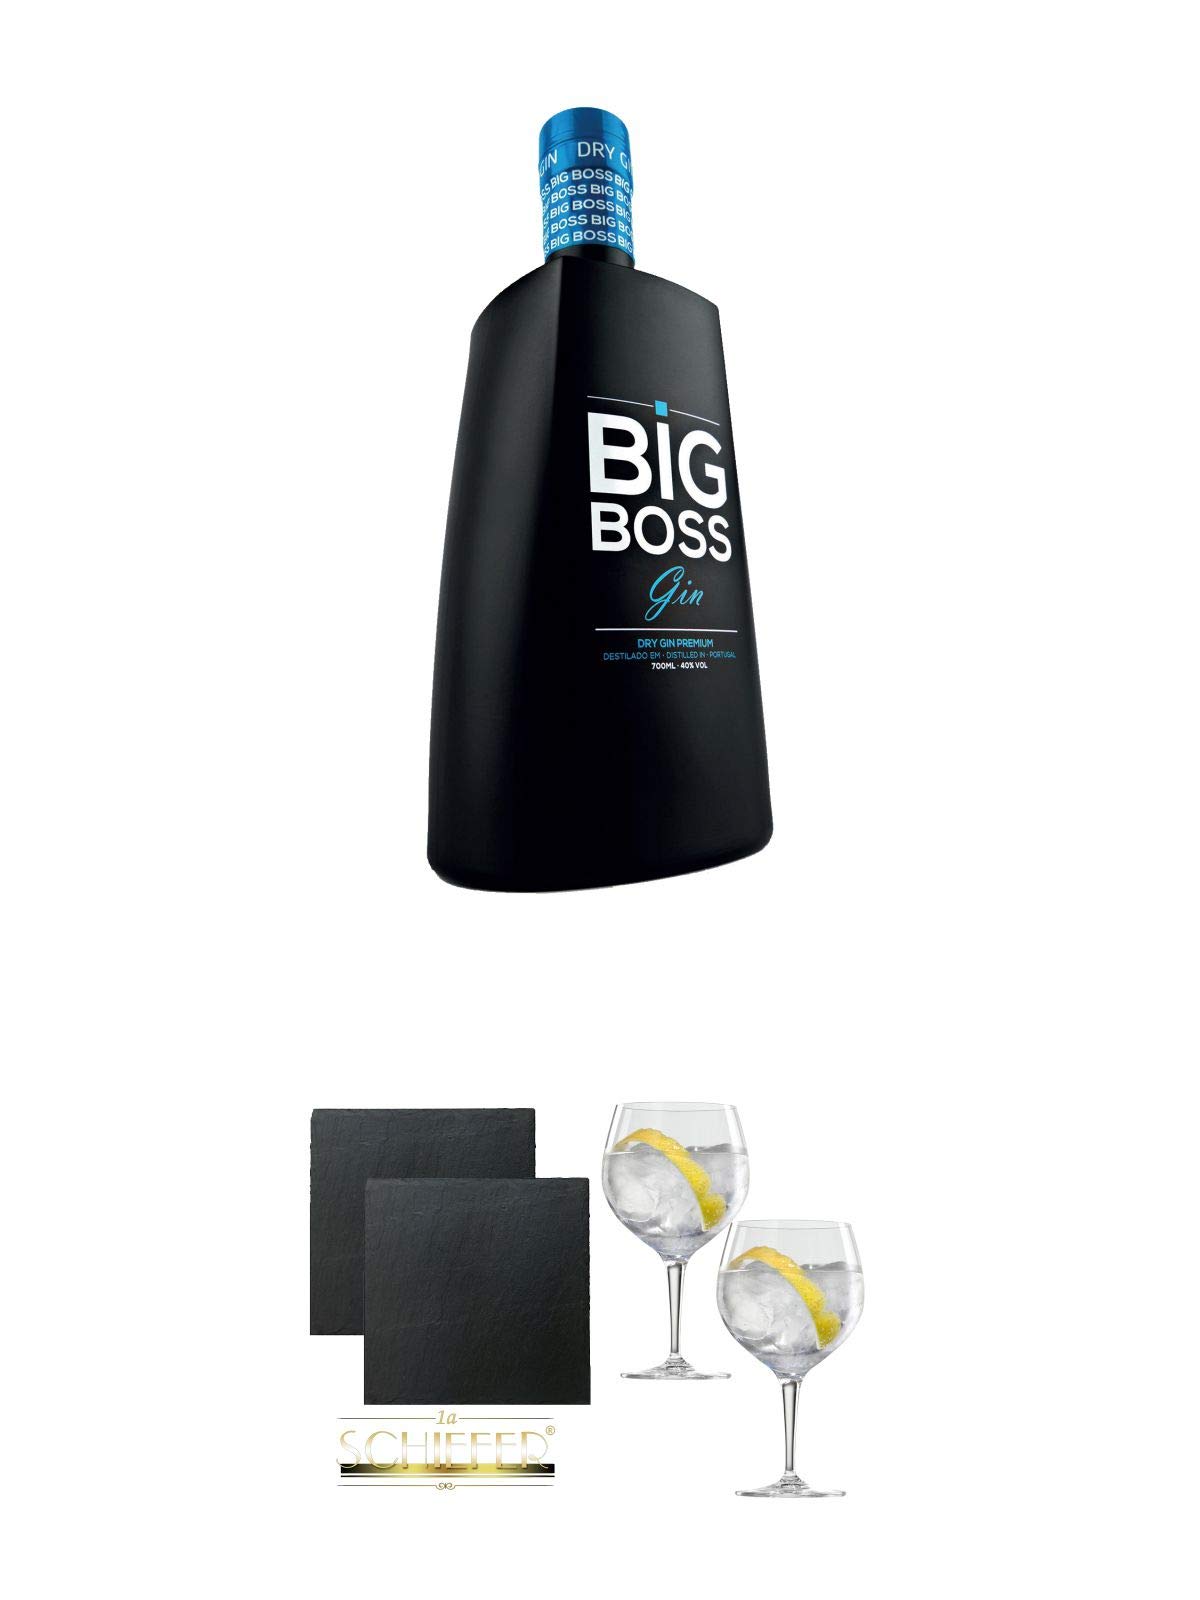 Big Boss Dry Gin Premium 40% 0,7 Liter + Schiefer Glasuntersetzer eckig ca. 9,5 cm Ø 2 Stück + Spiegelau Gin & Tonic 4390179 2 Gläser